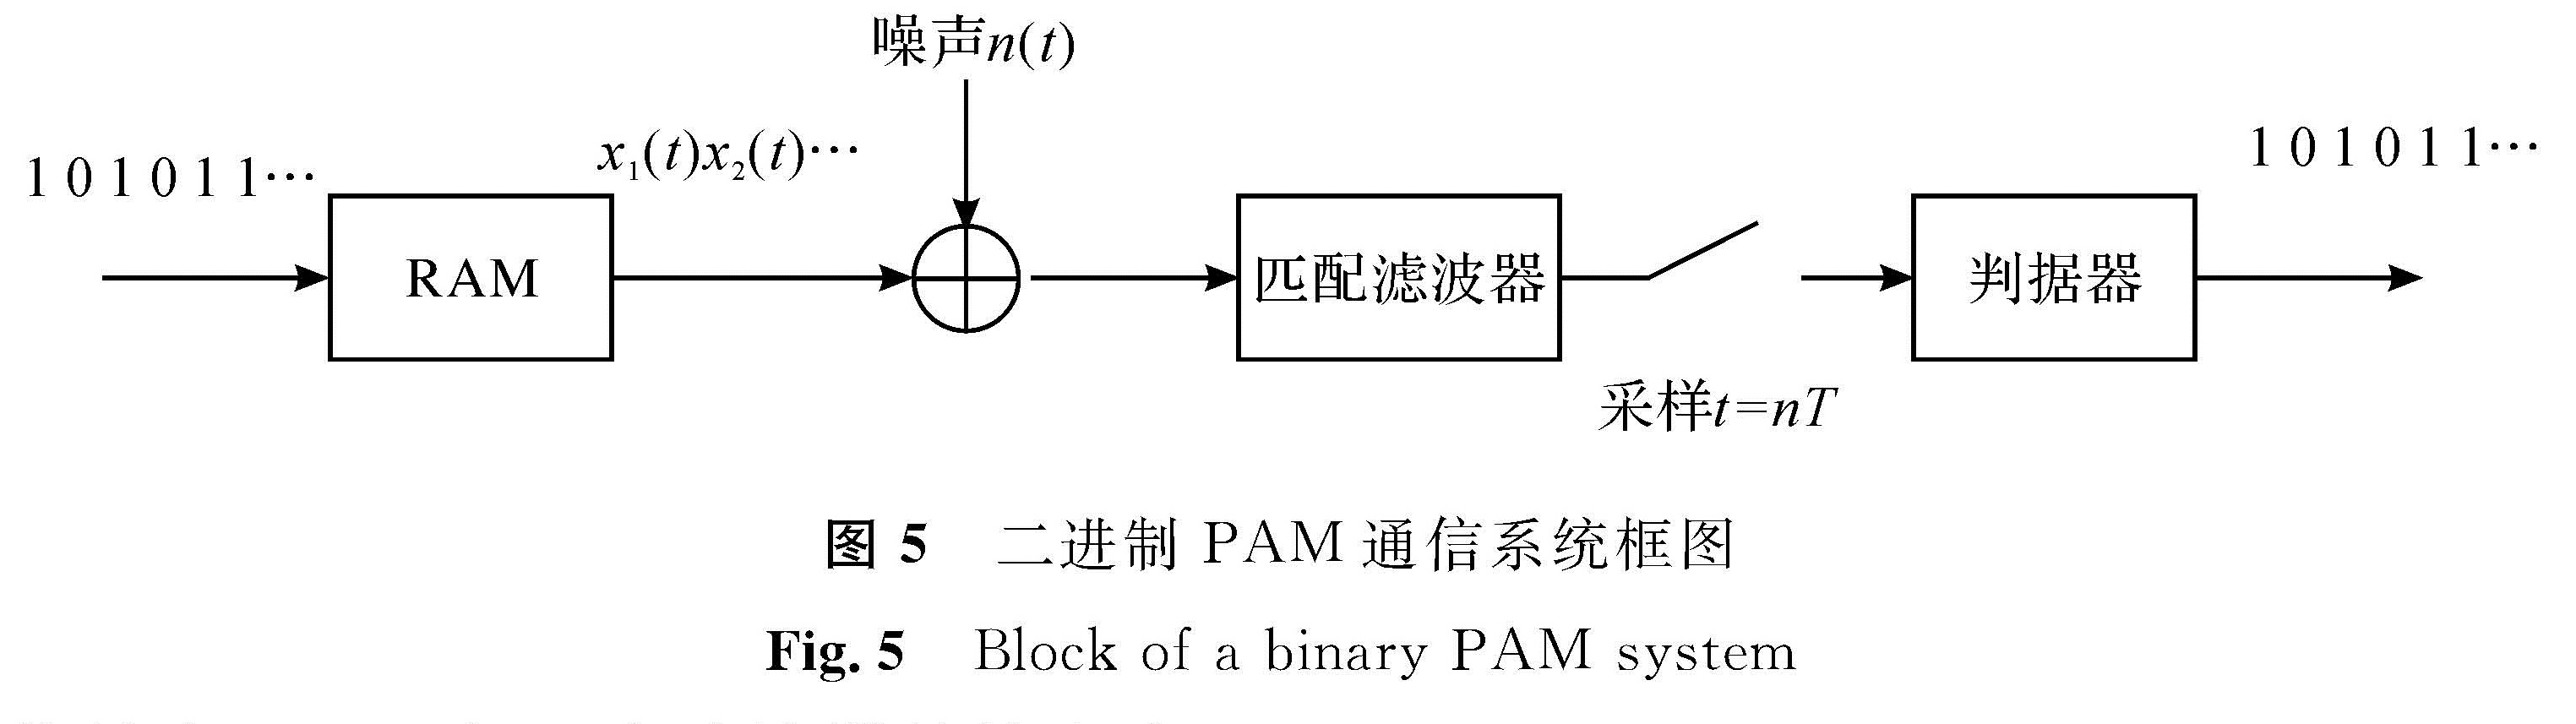 图5 二进制PAM通信系统框图<br/>Fig.5 Block of a binary PAM system